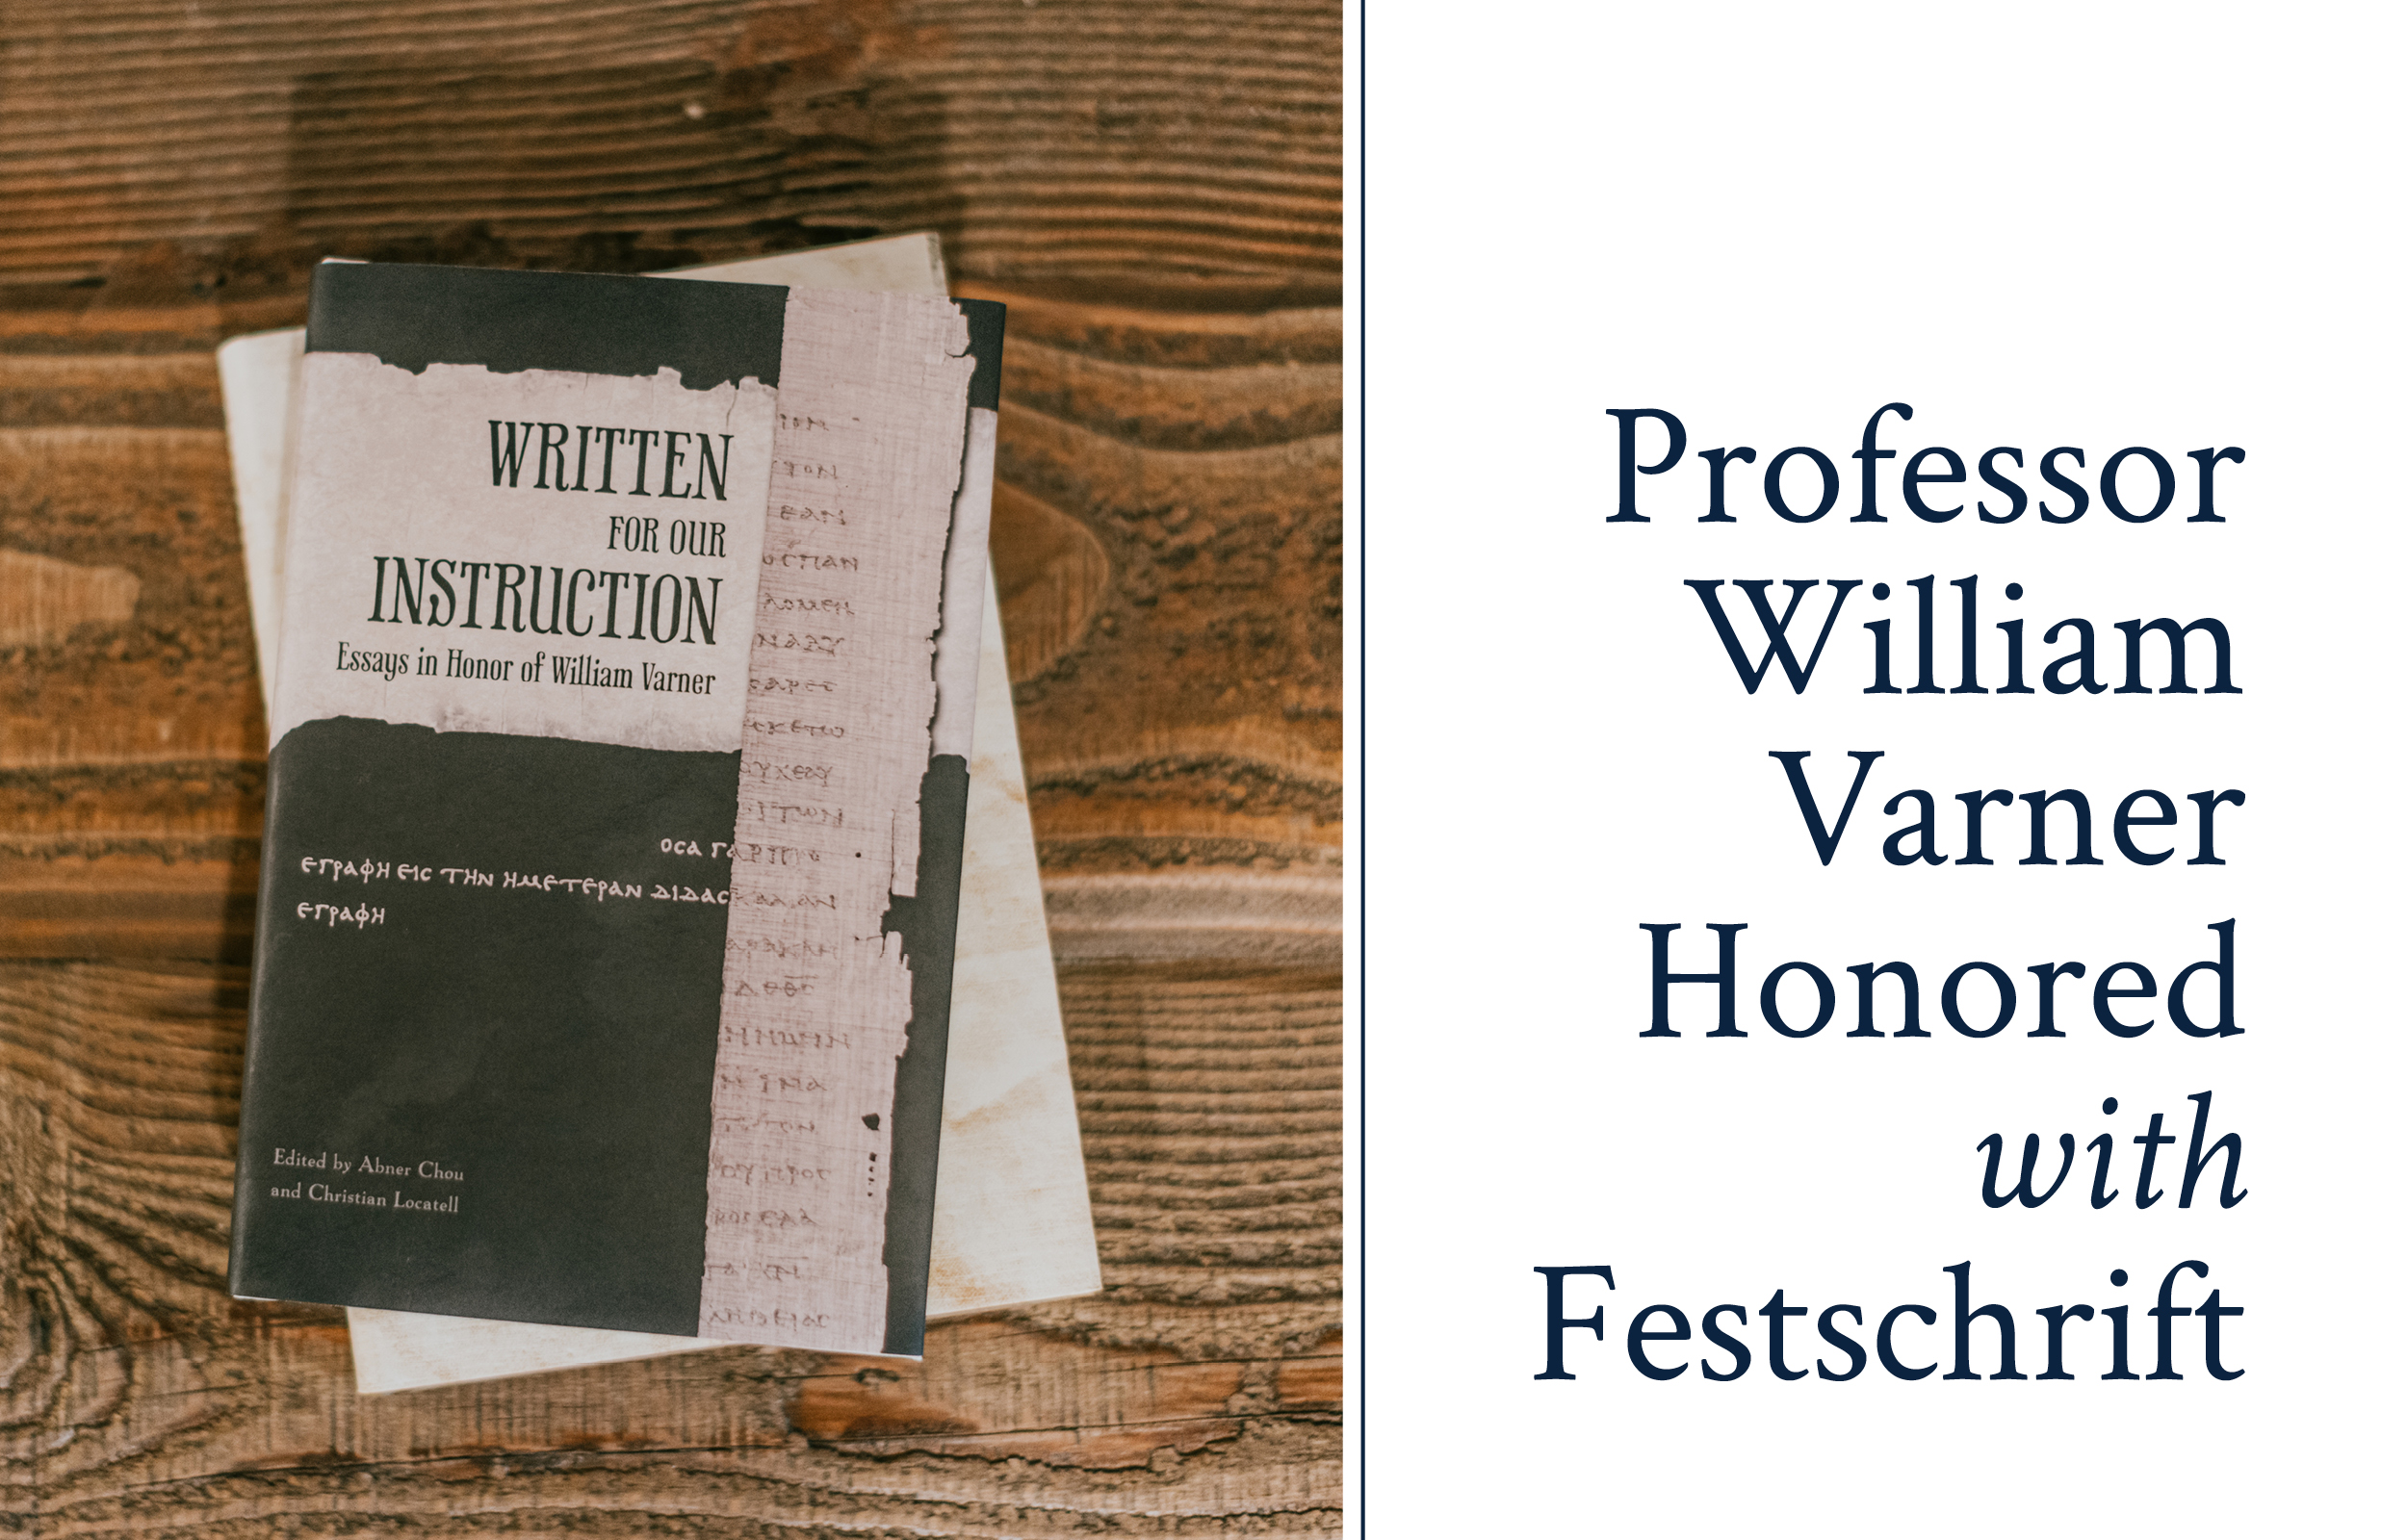 Professor William Varner Honored with Festschrift image